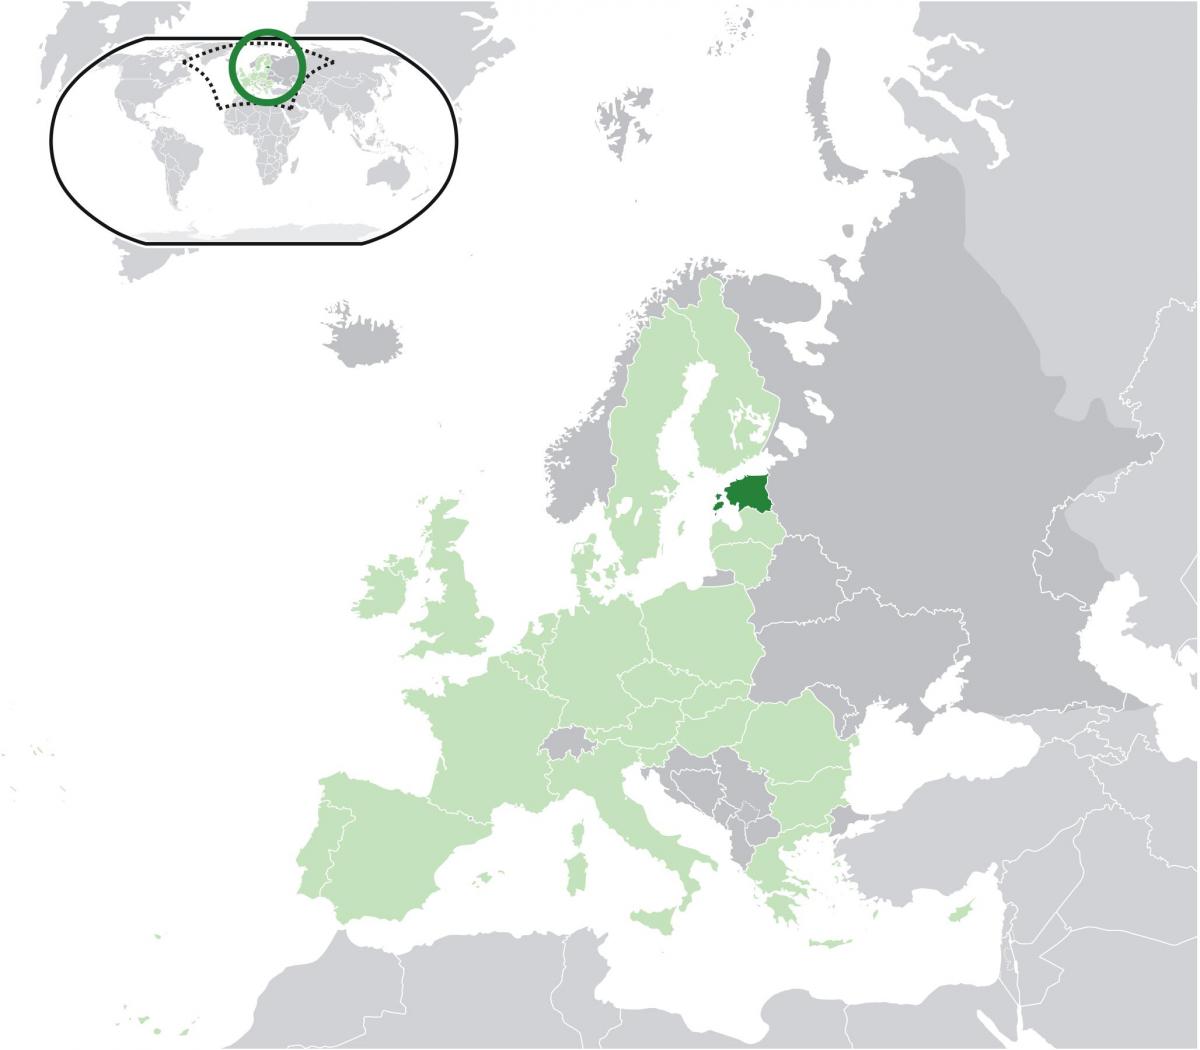 Viro on euroopan kartta